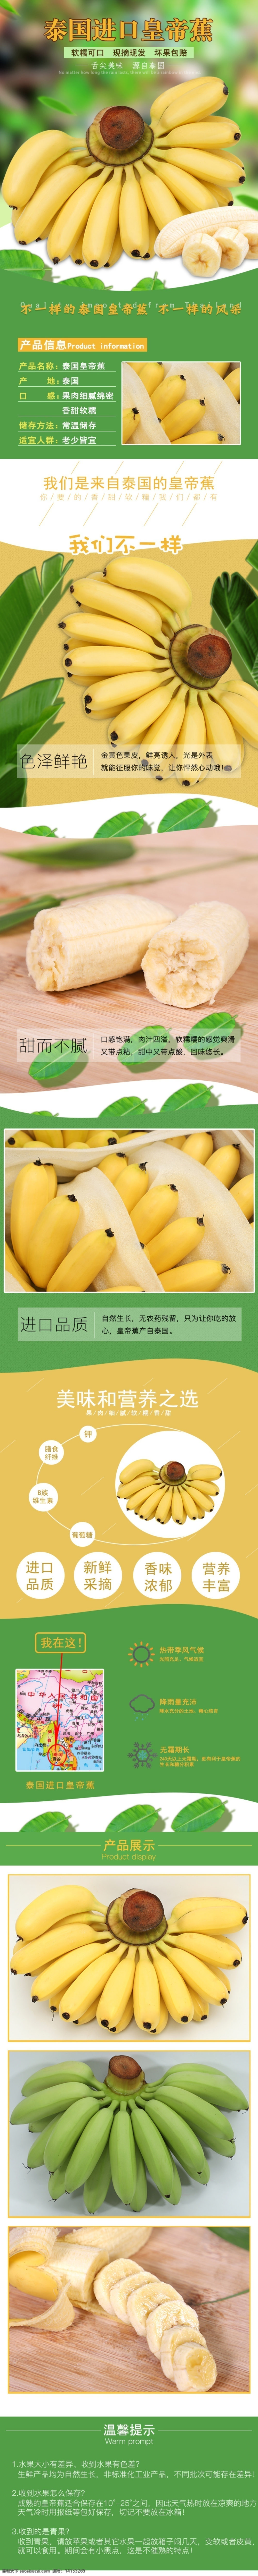 香蕉 芭蕉 详情 页 香蕉详情页 进口芭蕉 泰国进口香蕉